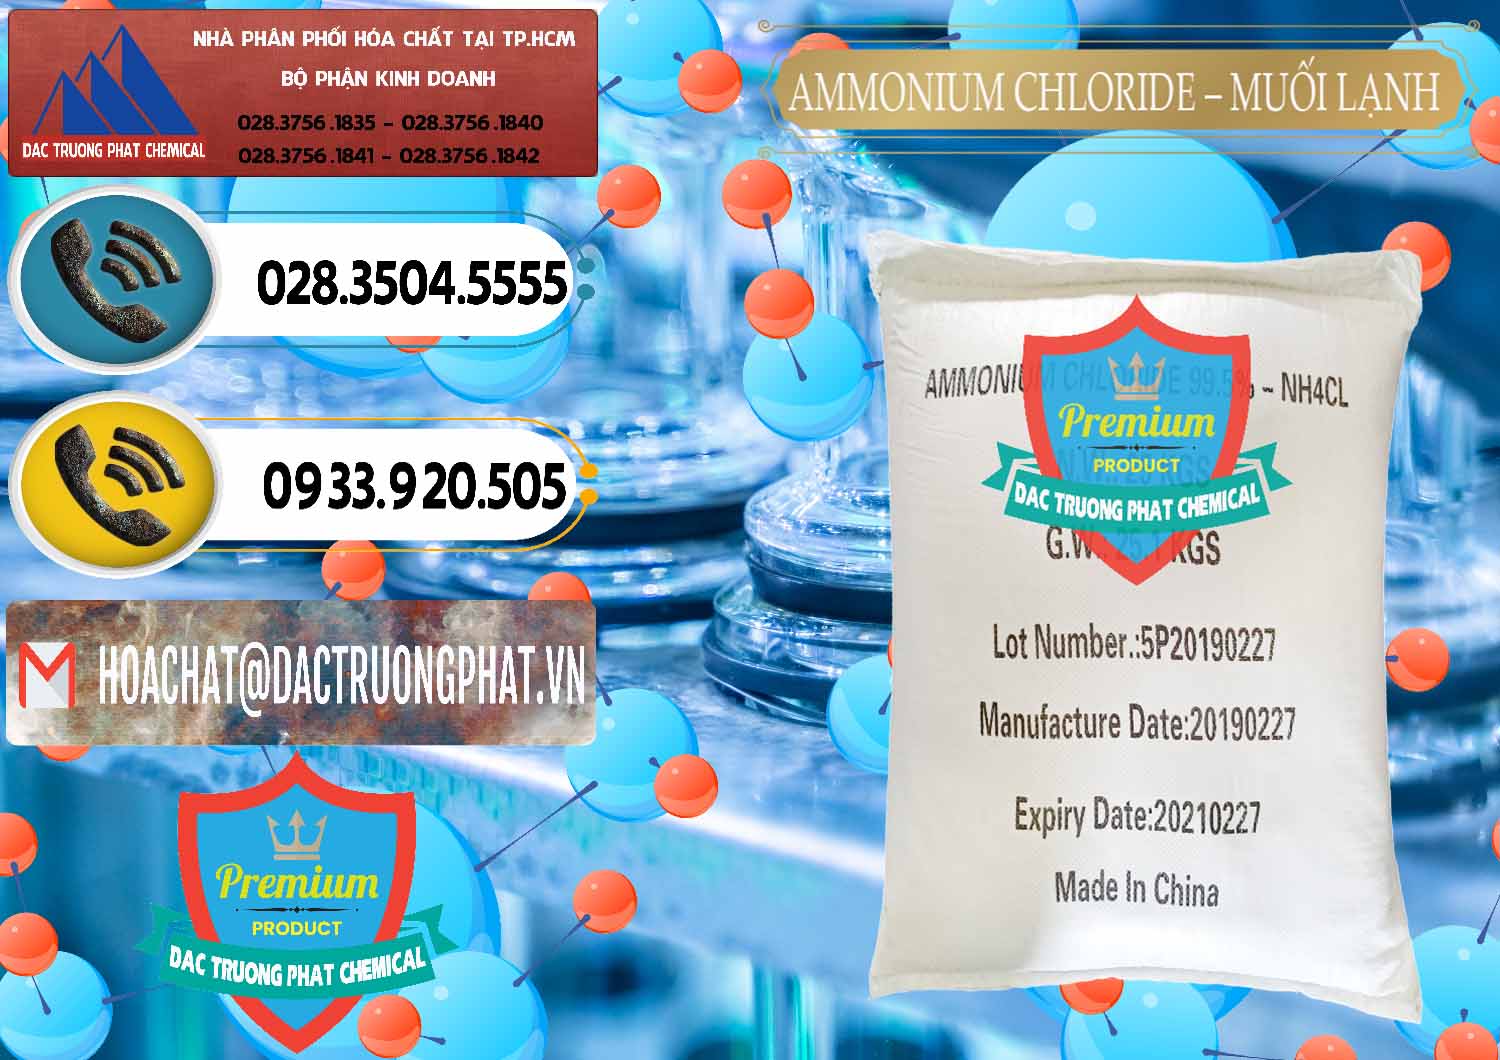 Bán & cung ứng Ammonium Chloride - Muối Lạnh NH4CL Trung Quốc China - 0021 - Nơi phân phối ( cung cấp ) hóa chất tại TP.HCM - hoachatdetnhuom.vn